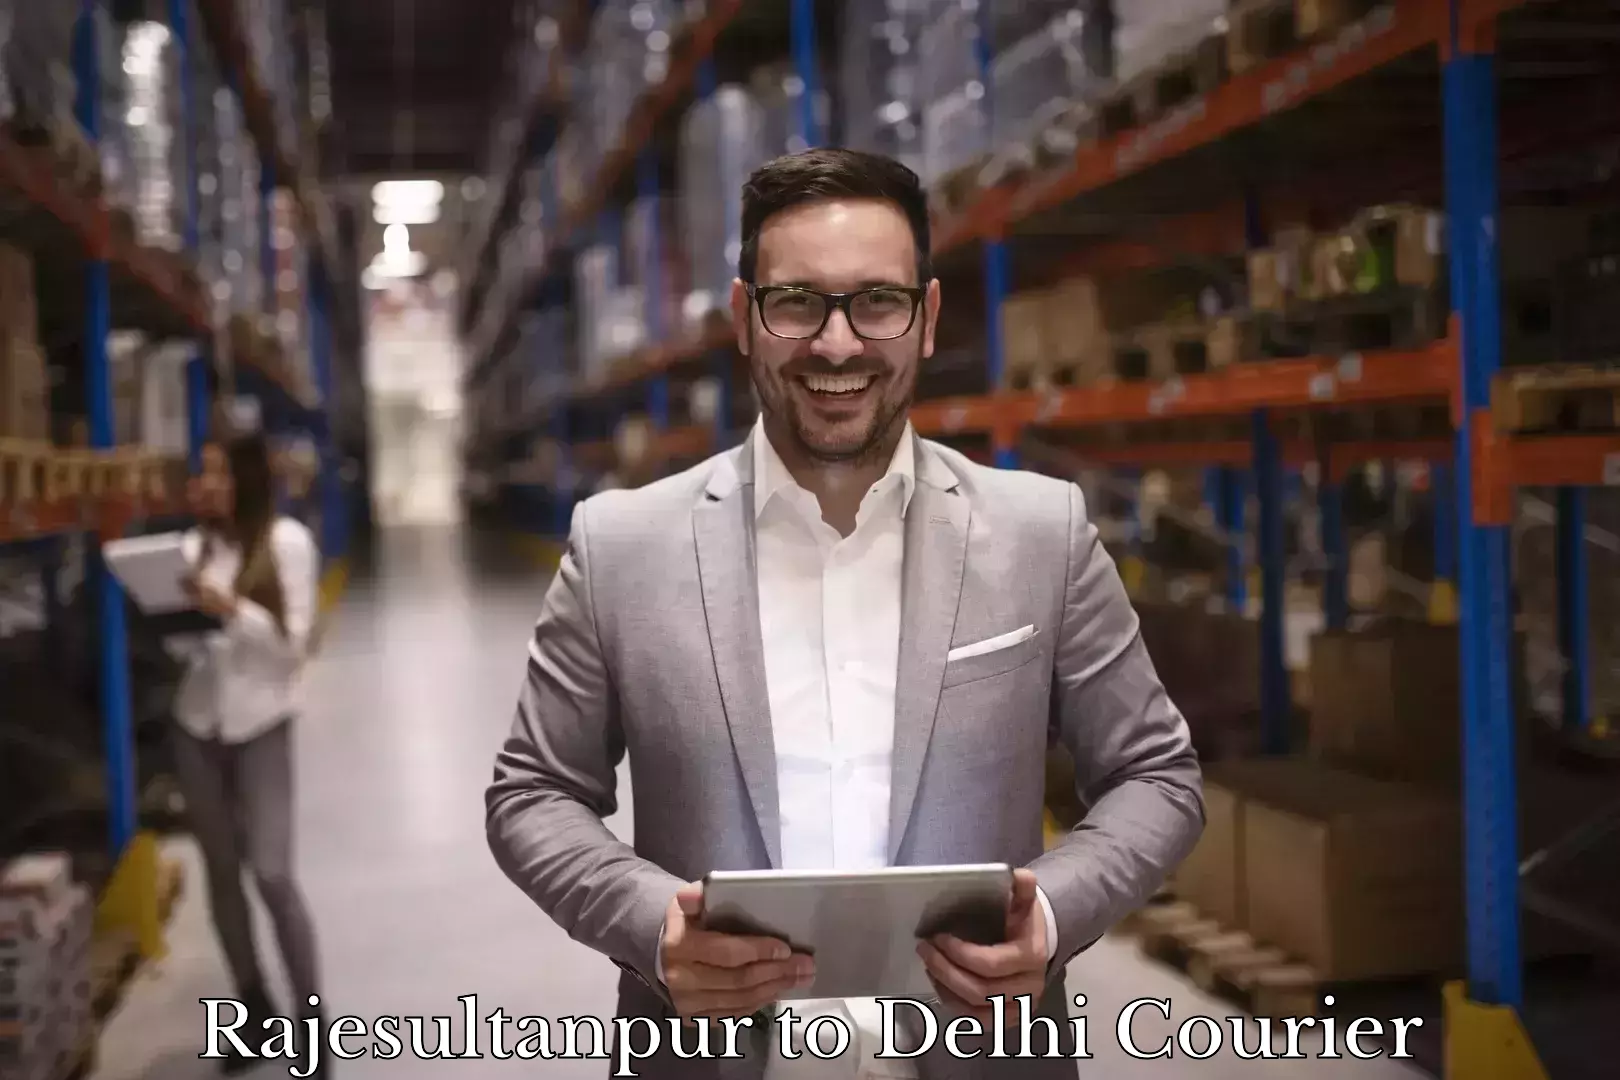 Furniture delivery service Rajesultanpur to Delhi Technological University DTU